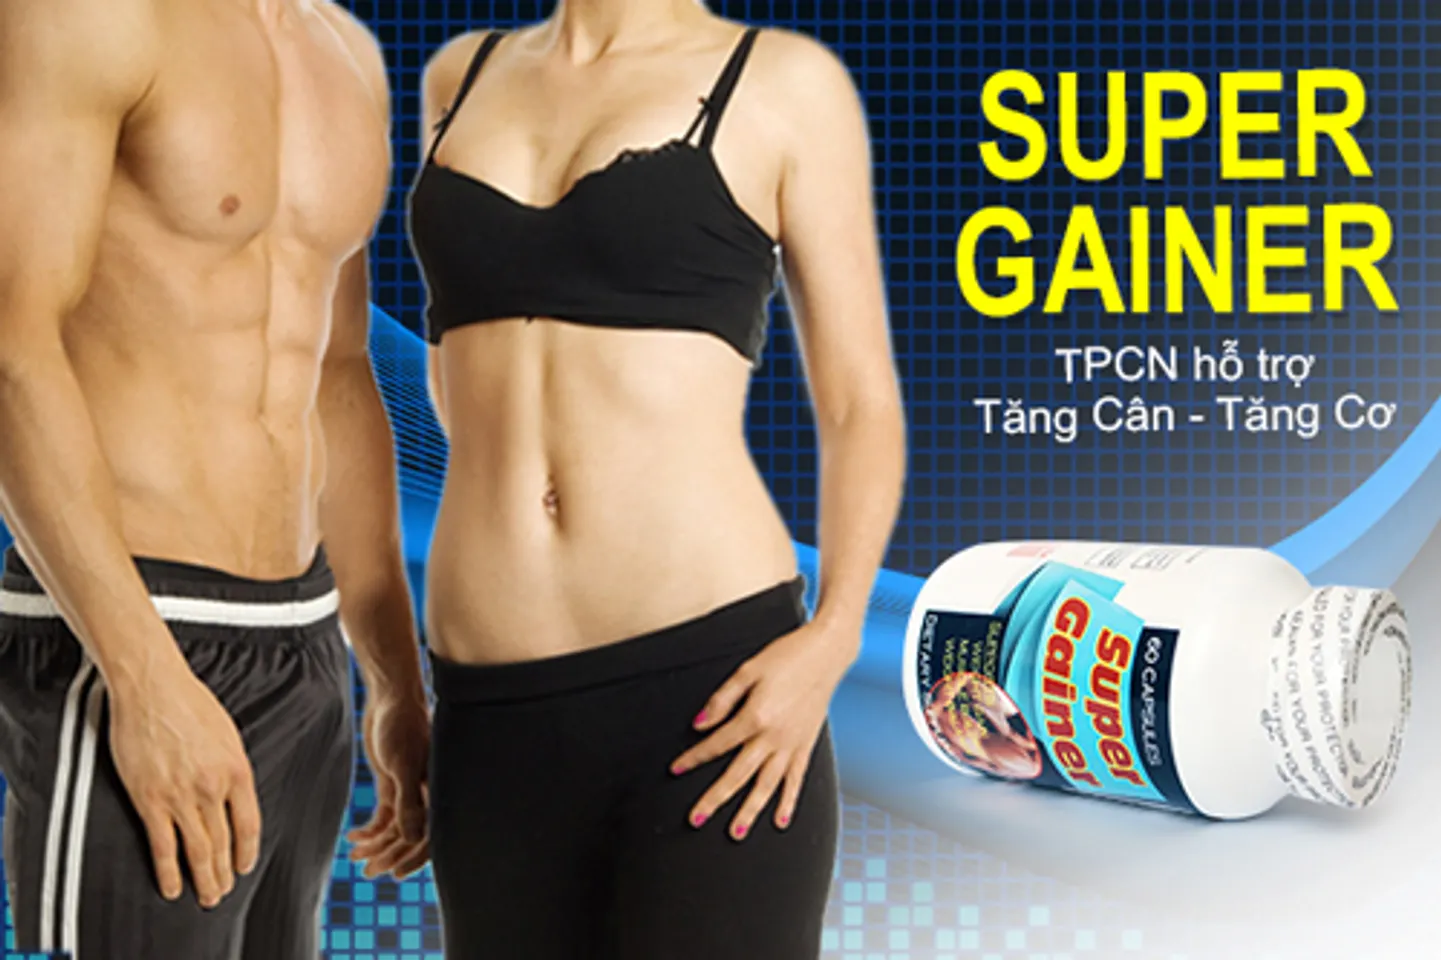 Super Gainer giúp bạn tăng cân tăng cơ tự nhiên từ sâu bên trong